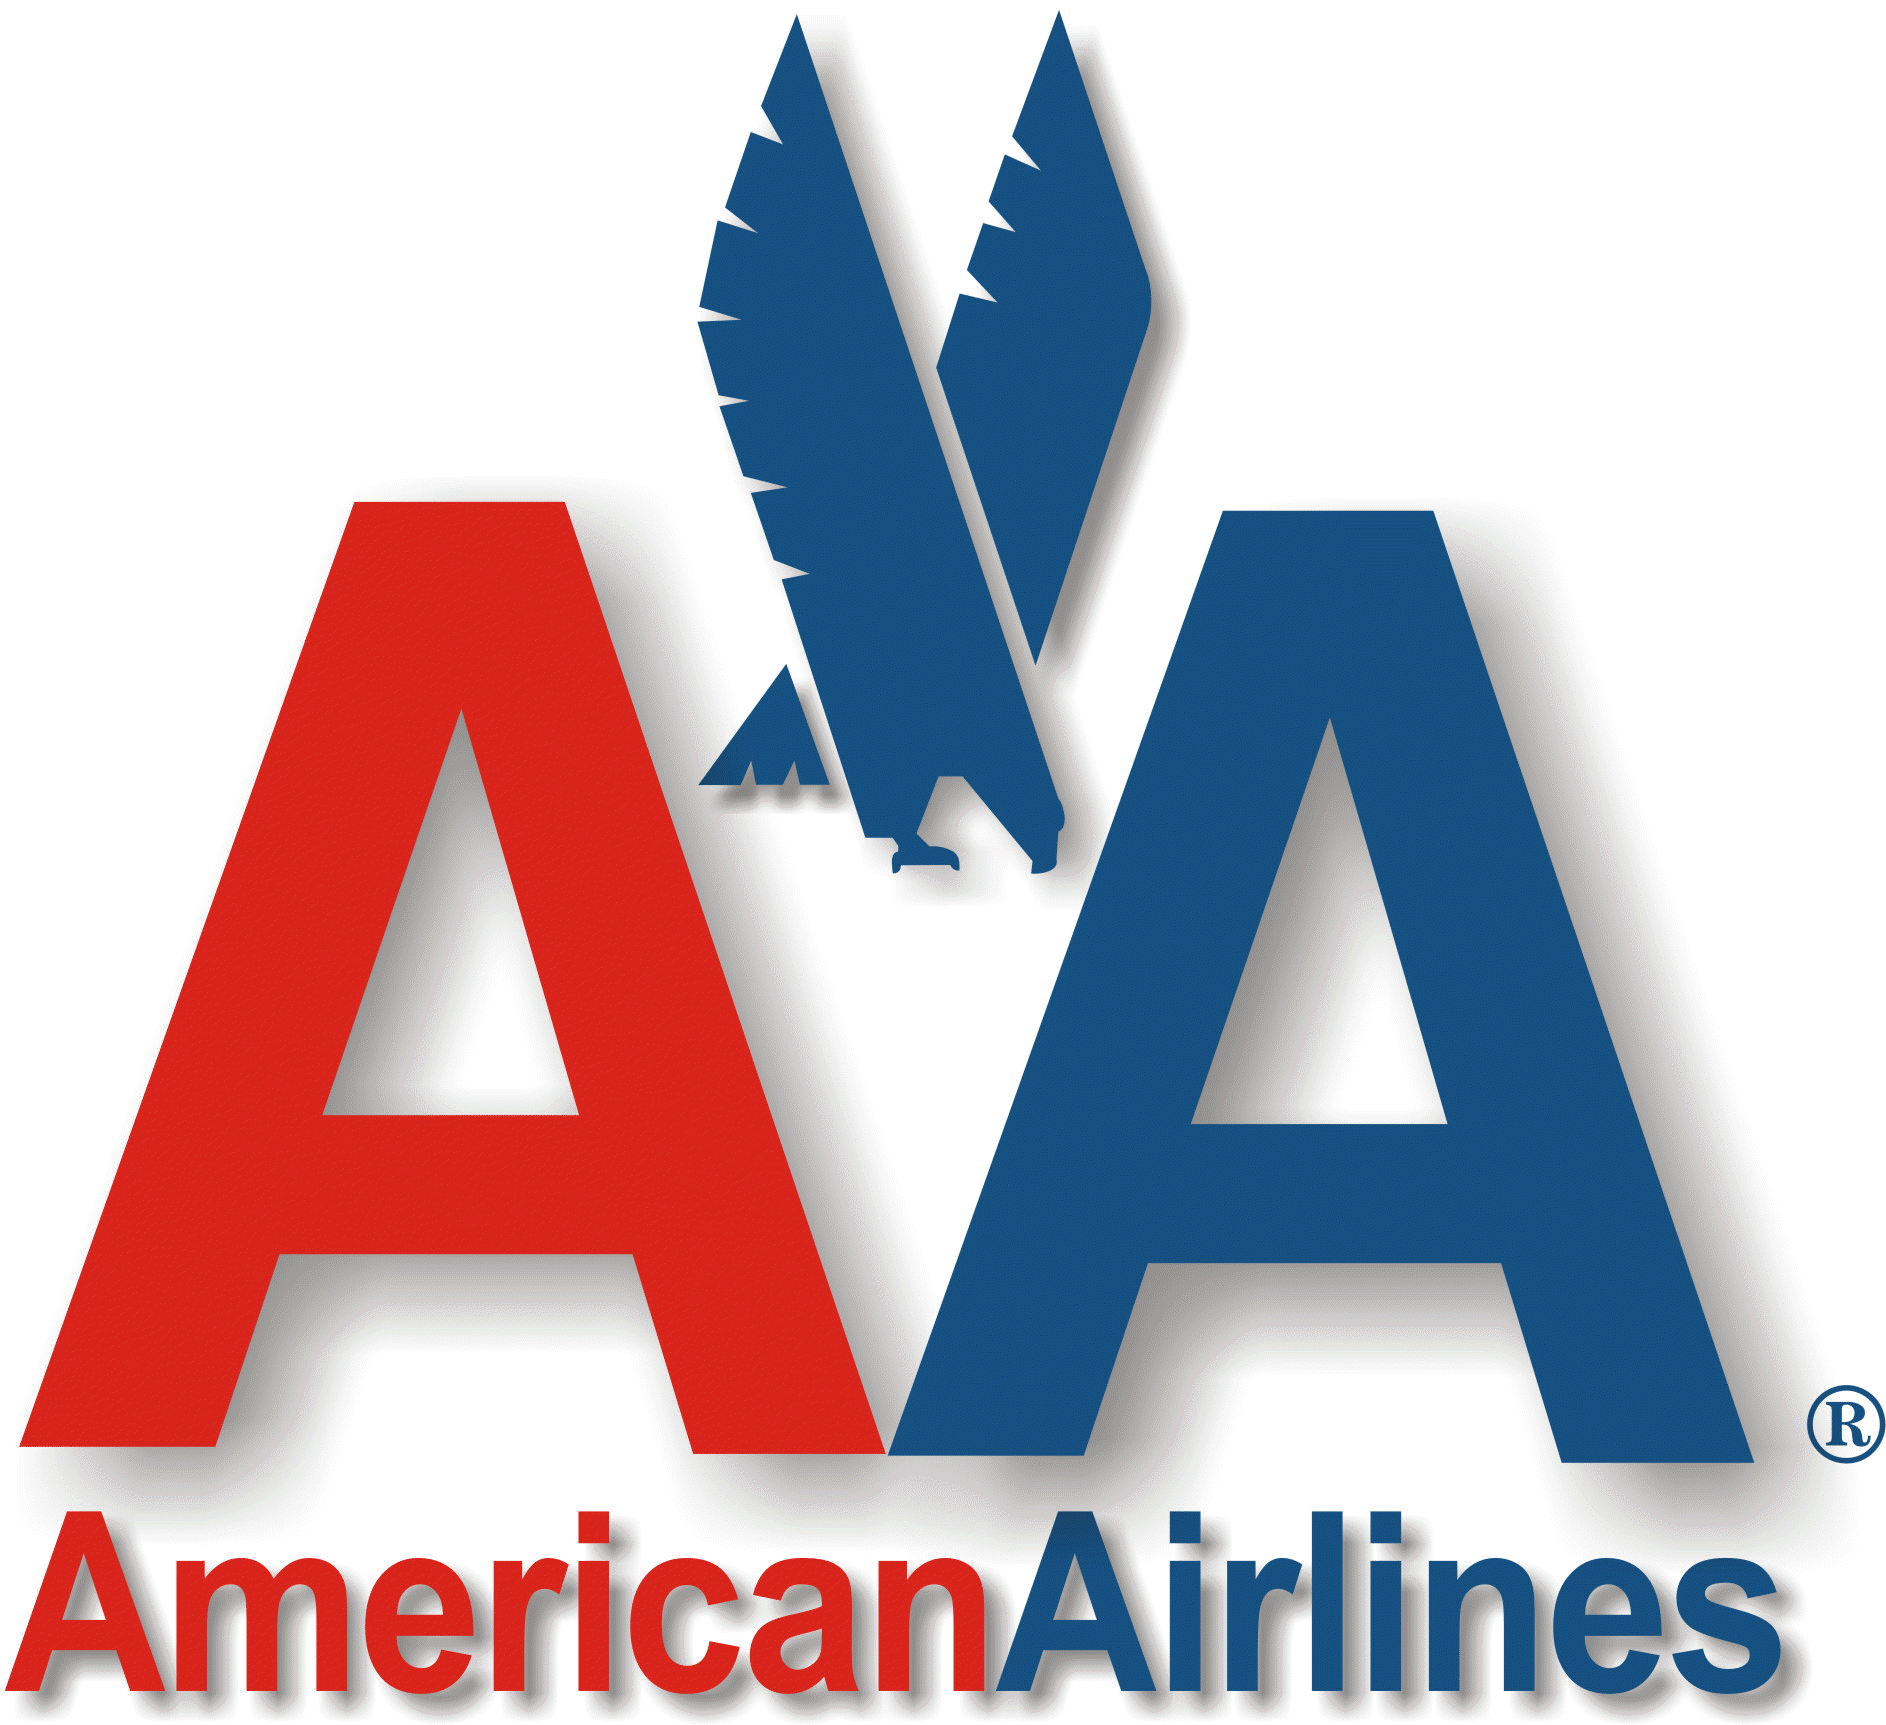 Major Airline Logo - Dépôt de bilan d'American Airlines | Texas | Airline logo, Aviation ...